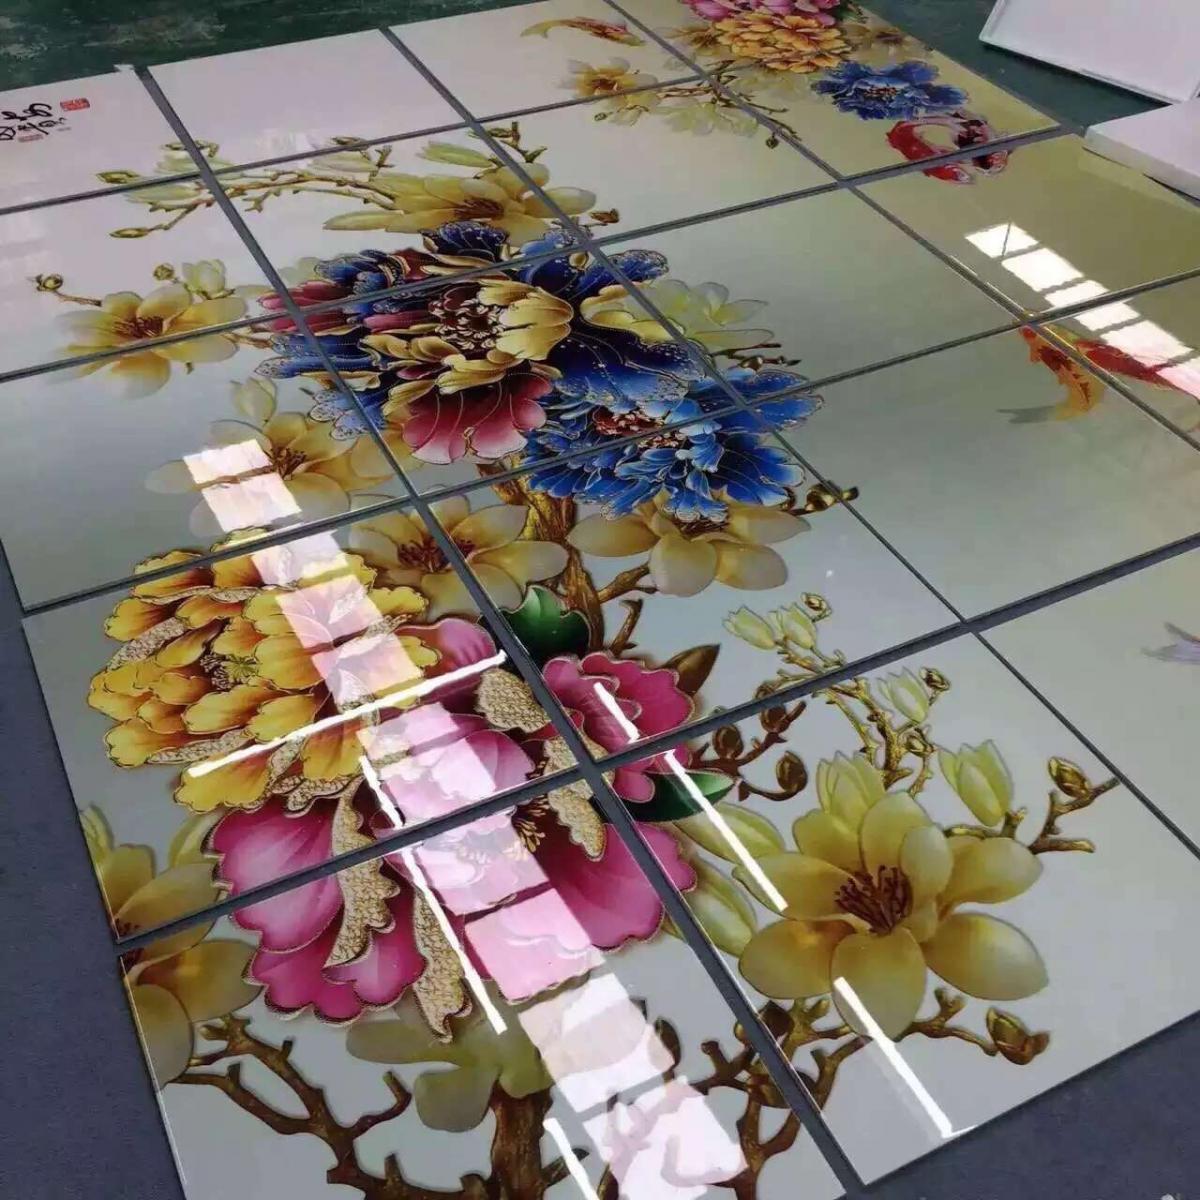 亚克力万能uv彩印机 钢化玻璃彩印设备 理光uv平板打印机生产厂家